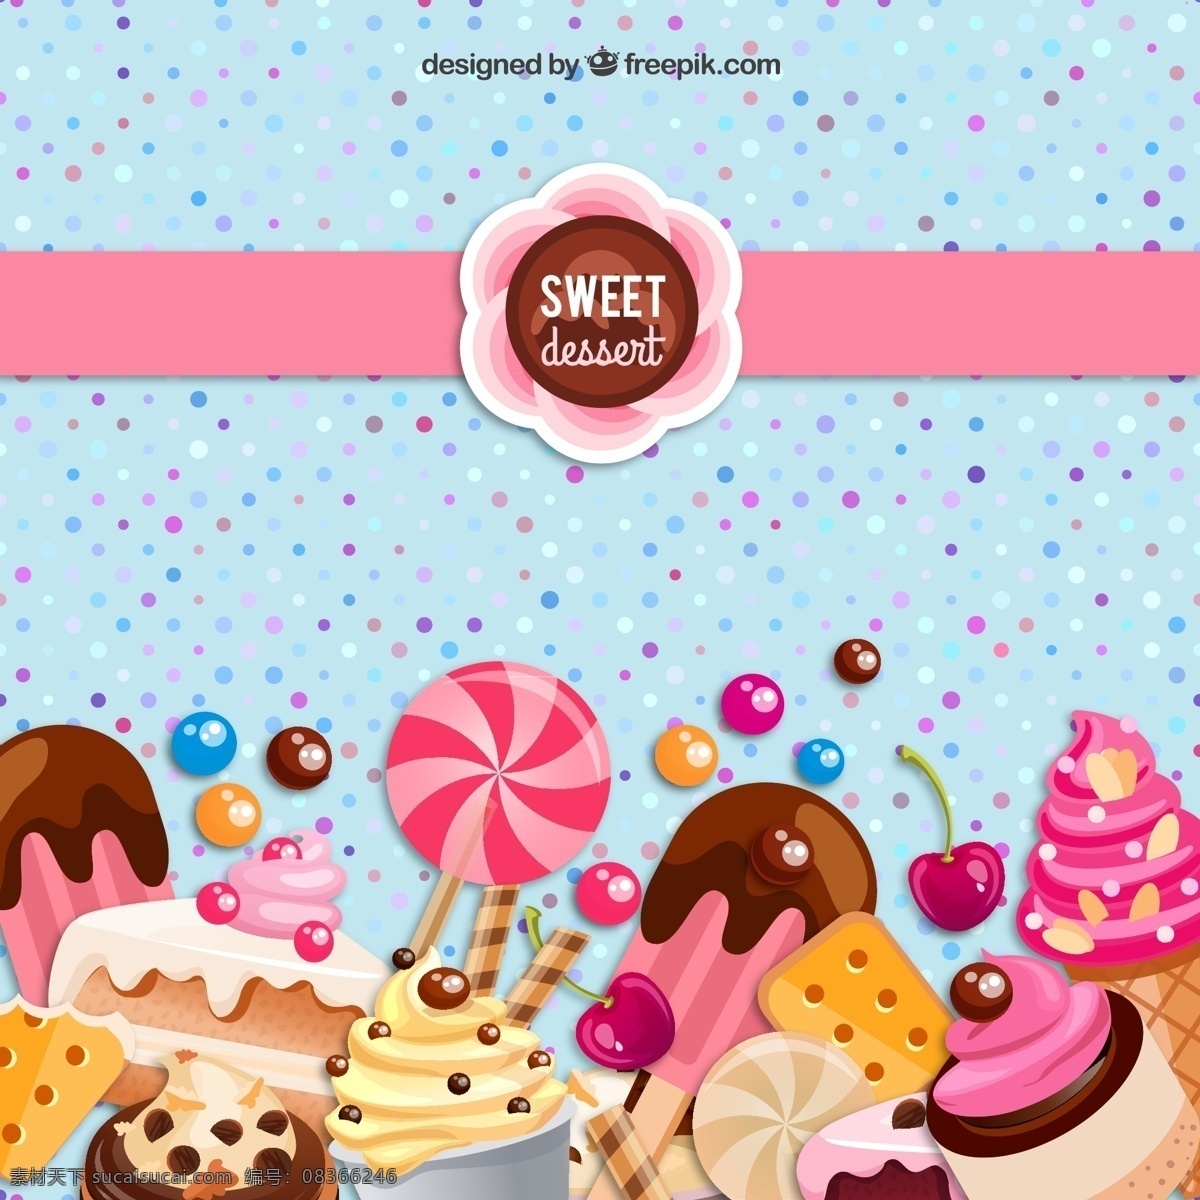 精美 甜点 背景 矢量 水玉点 棒棒糖 巧克力豆 冰棒 雪糕 冰淇淋 樱桃 饼干 蛋糕 矢量图